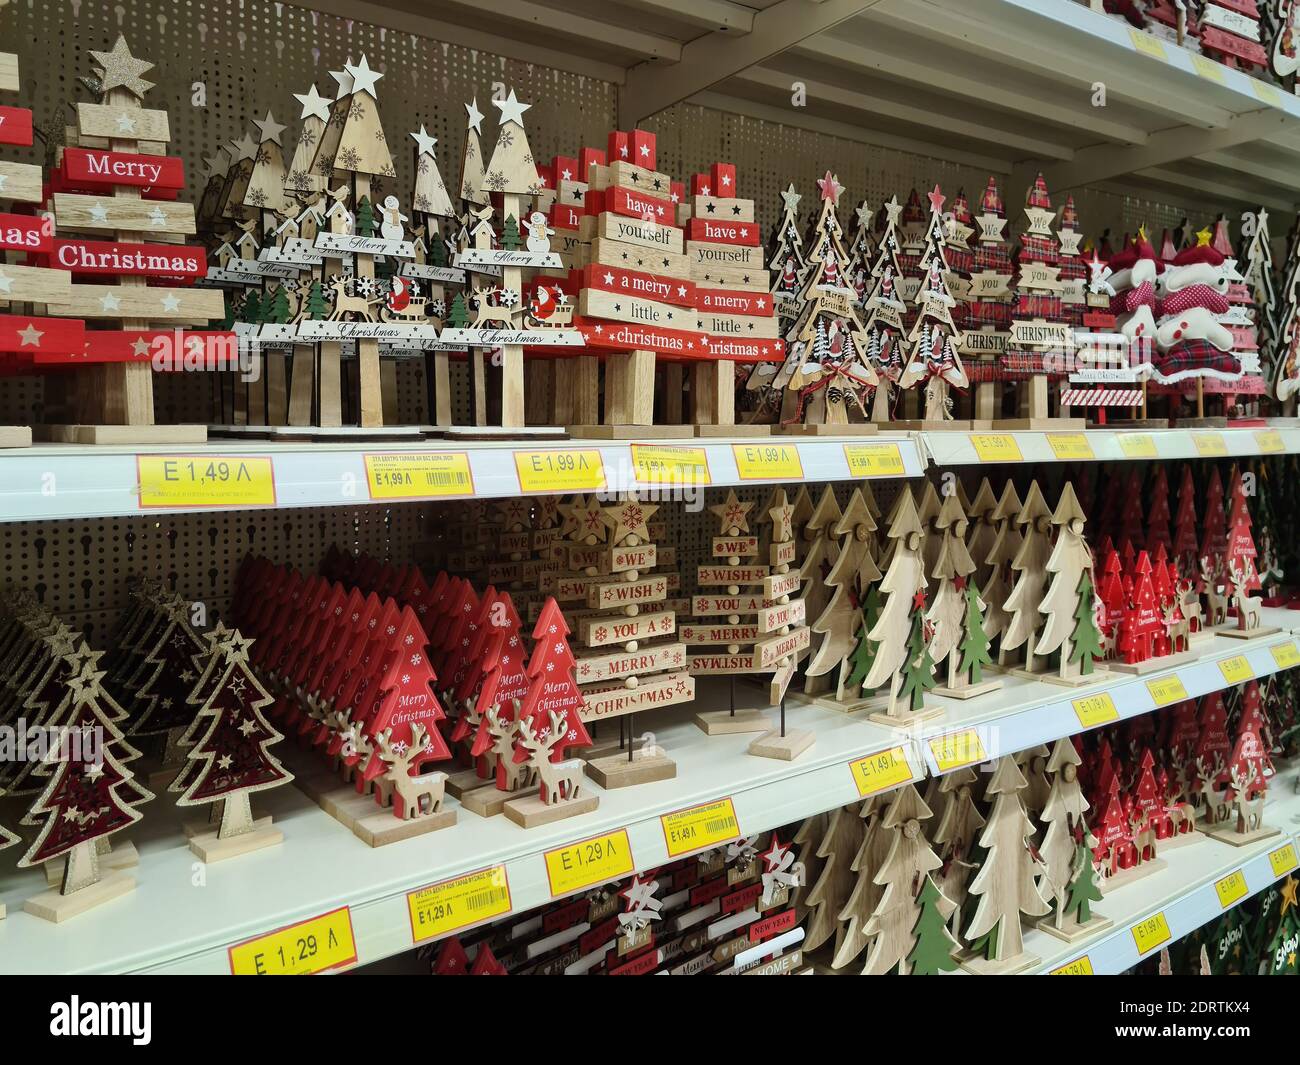 Thessaloniki, Griechenland - Oktober 27 2020: Weihnachts-Adventsfest-Produkte aus Holz im Regal. Festliche Dekorationen Figuren zum Verkauf auf dem Display Schaufenster innerhalb Shop-Galerie, mit Preisen in Euro. Stockfoto